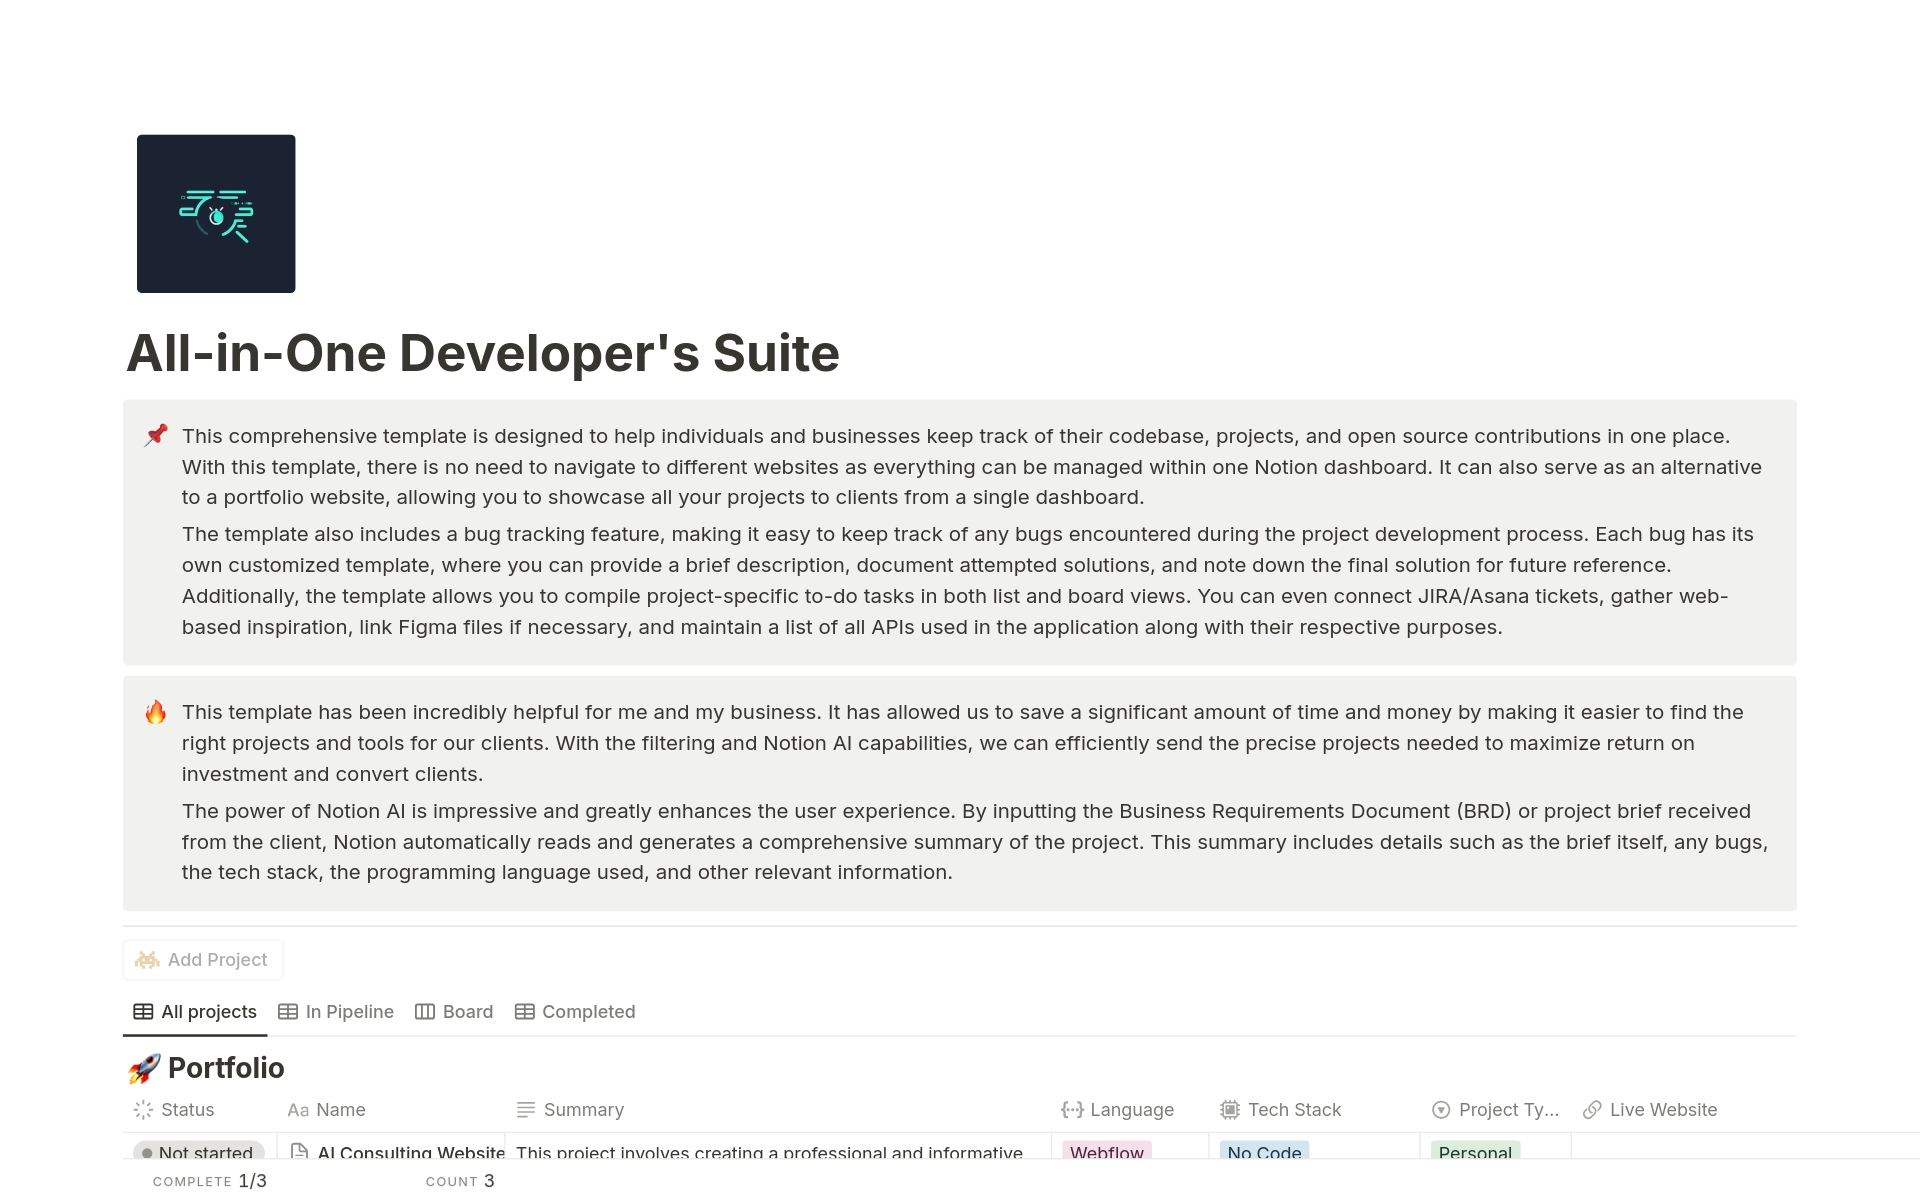 Vista previa de una plantilla para All-in-One Developer's Suite